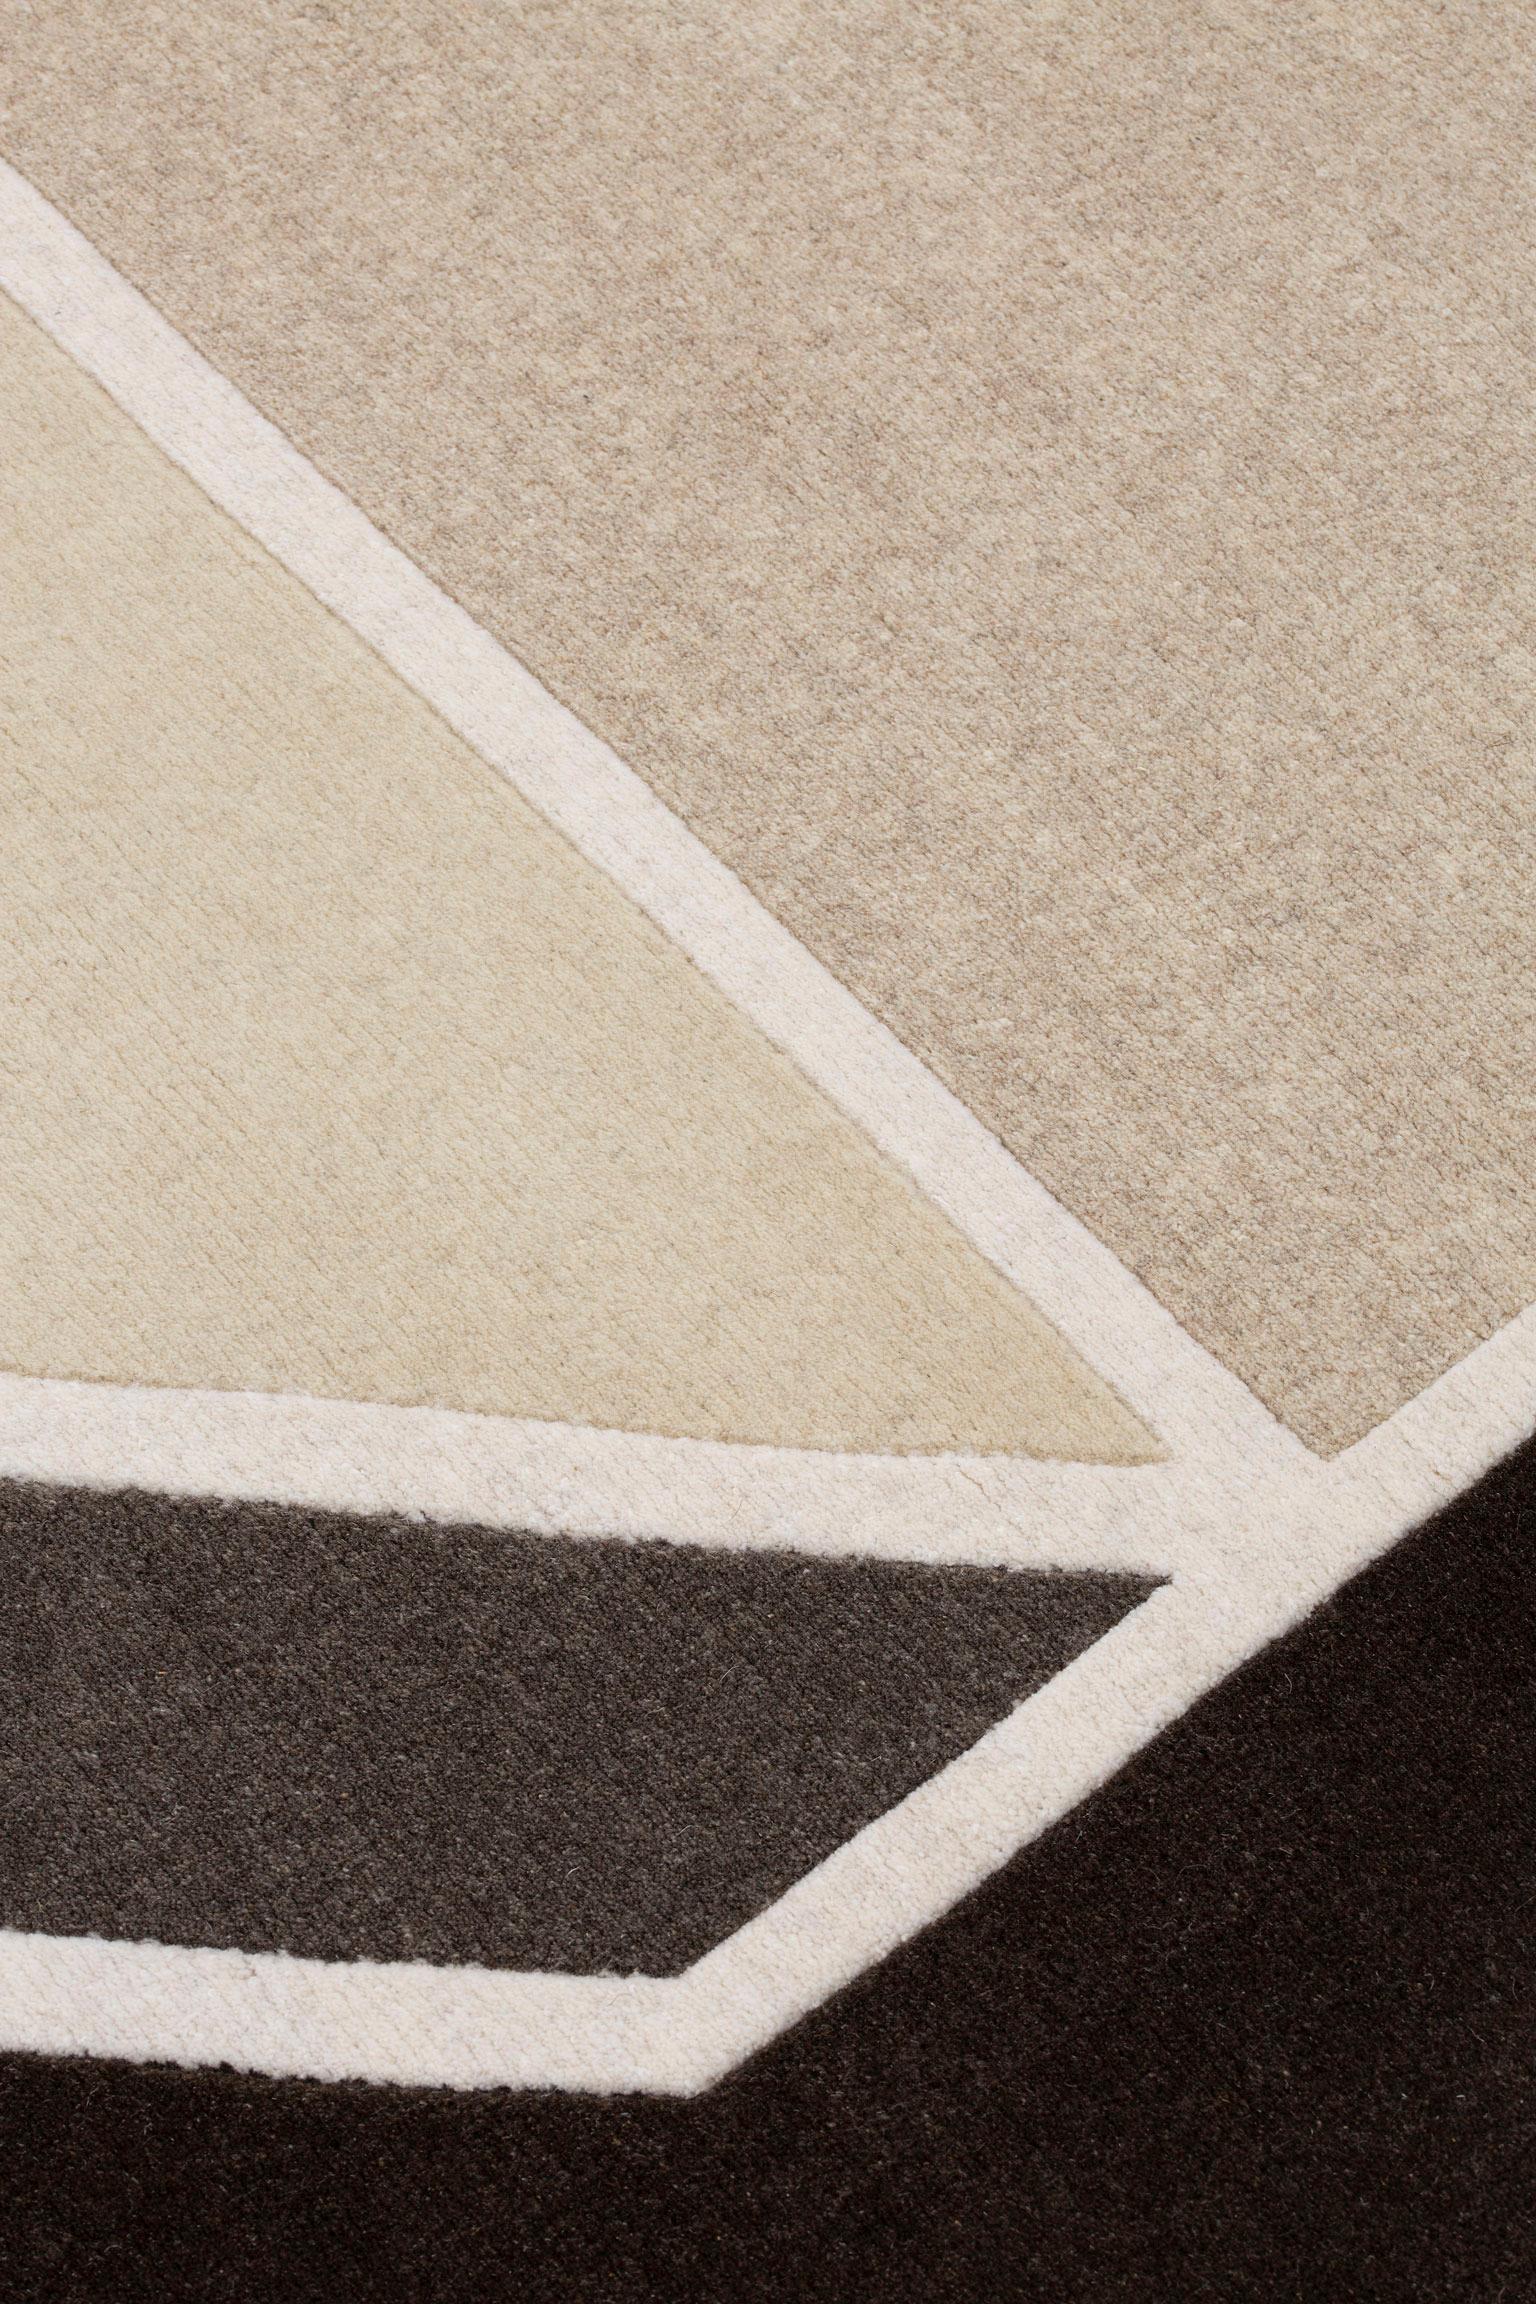 Les icônes cc-tapis sont présentées dans une ambiance entièrement non teintée. 
Apporter une chaleur naturelle à l'esthétique avant-gardiste de la marque, chaque tapis exprimant sa singularité par sa couleur naturelle.